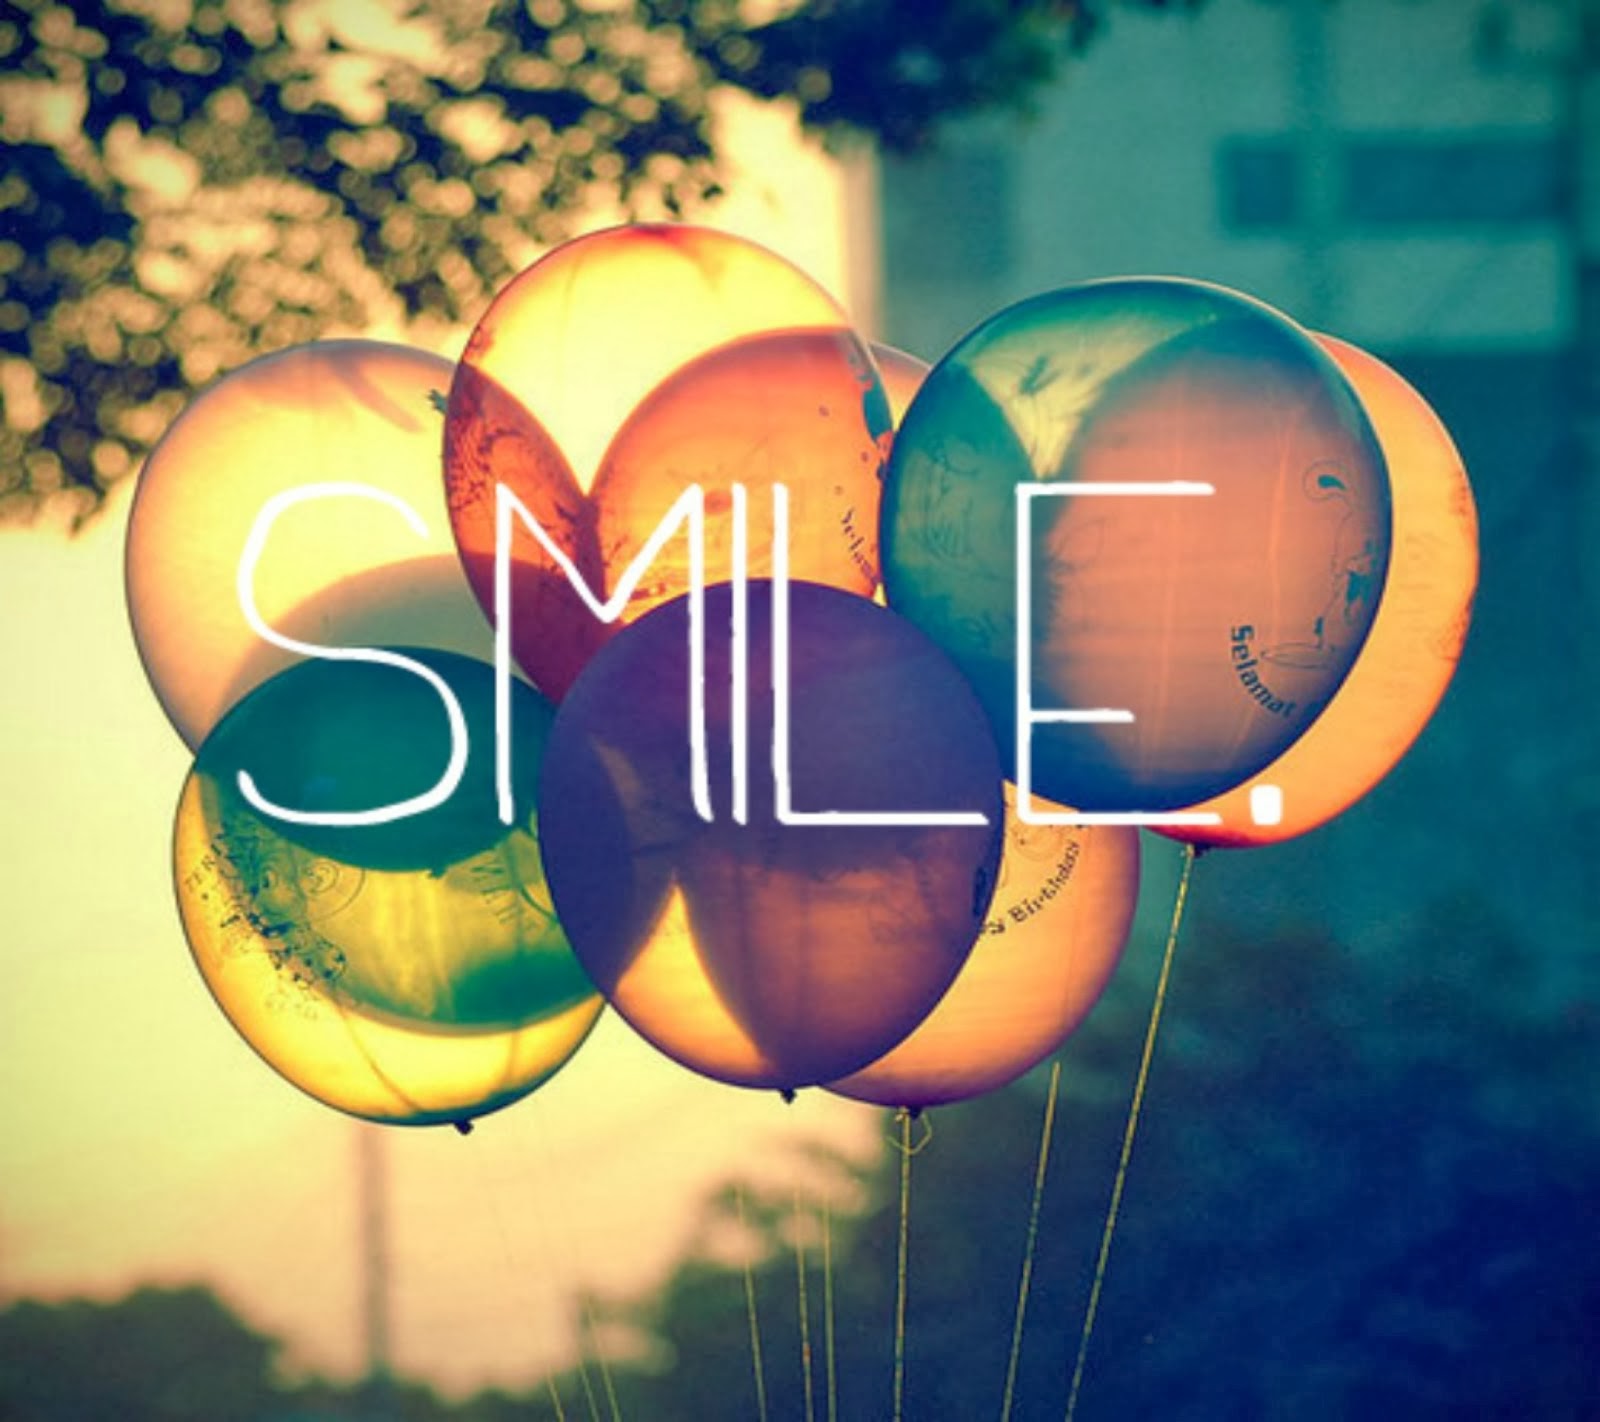 You Smile, I Smile.